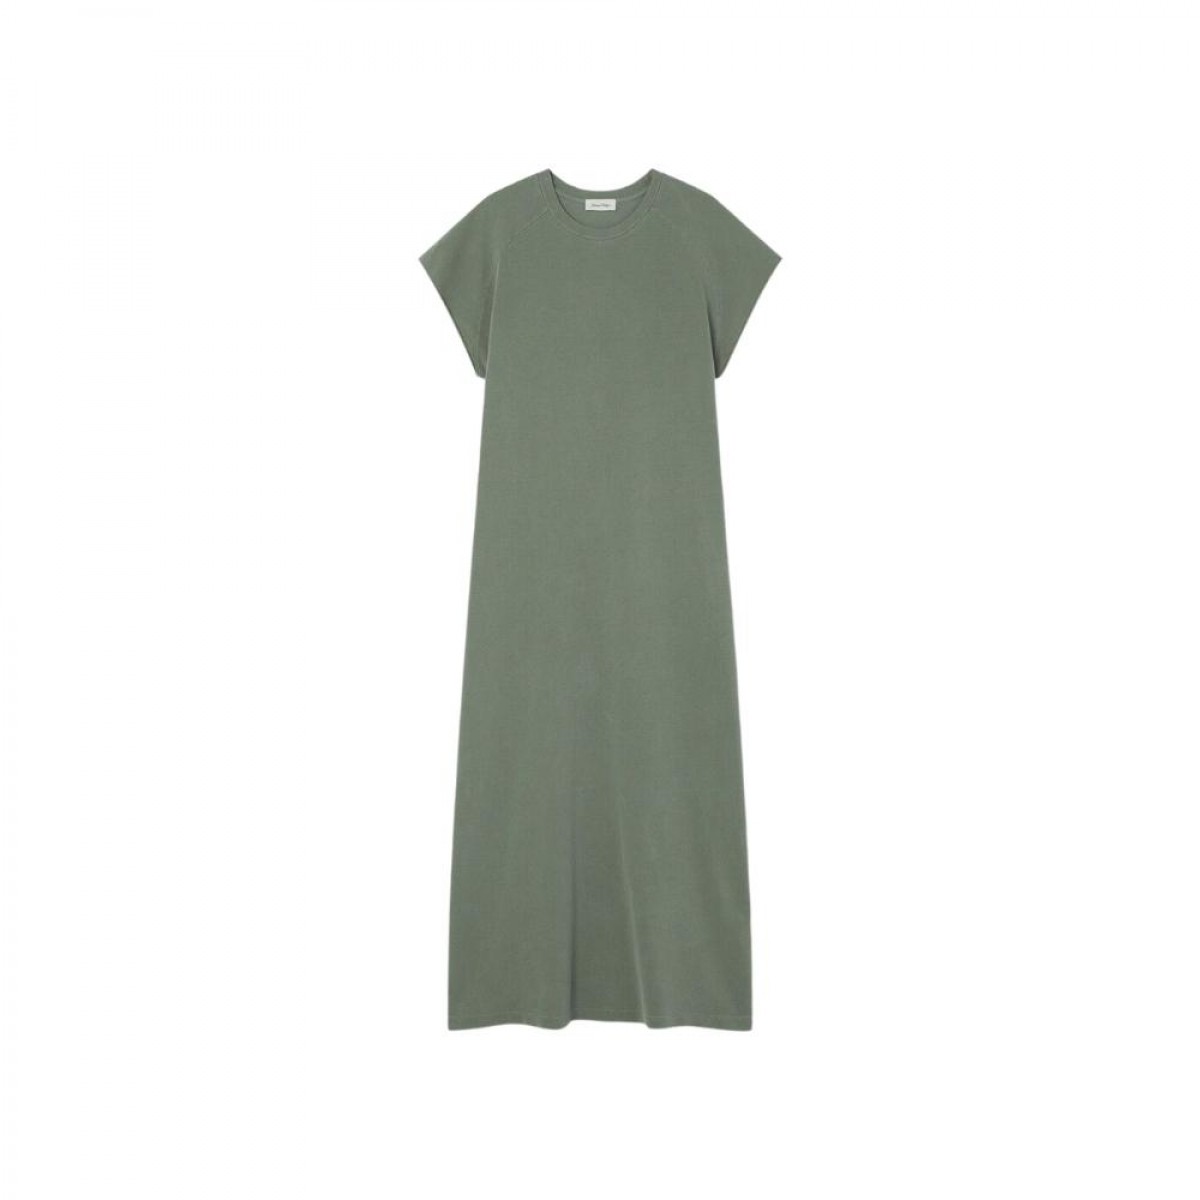 pyrastate dress - vintage olive - front